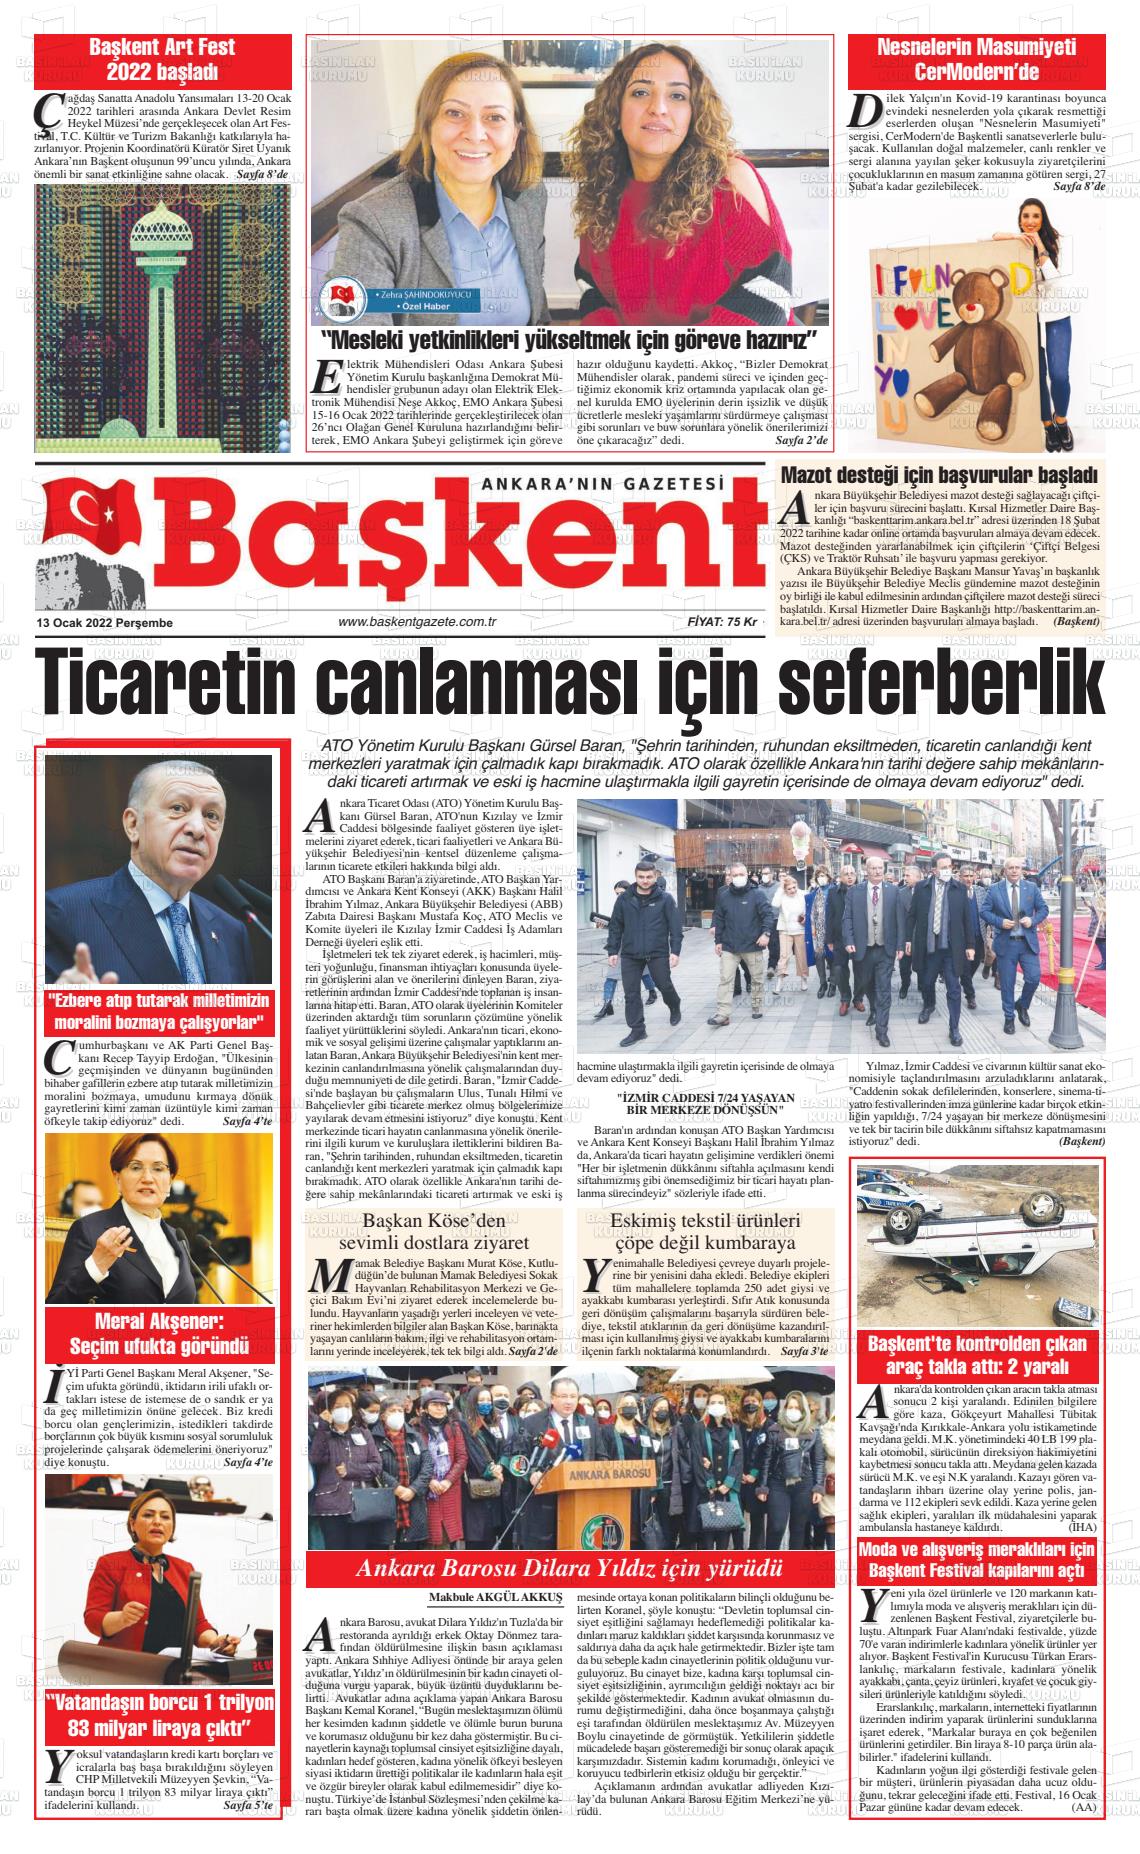 13 Ocak 2022 Ankara Başkent Gazete Manşeti